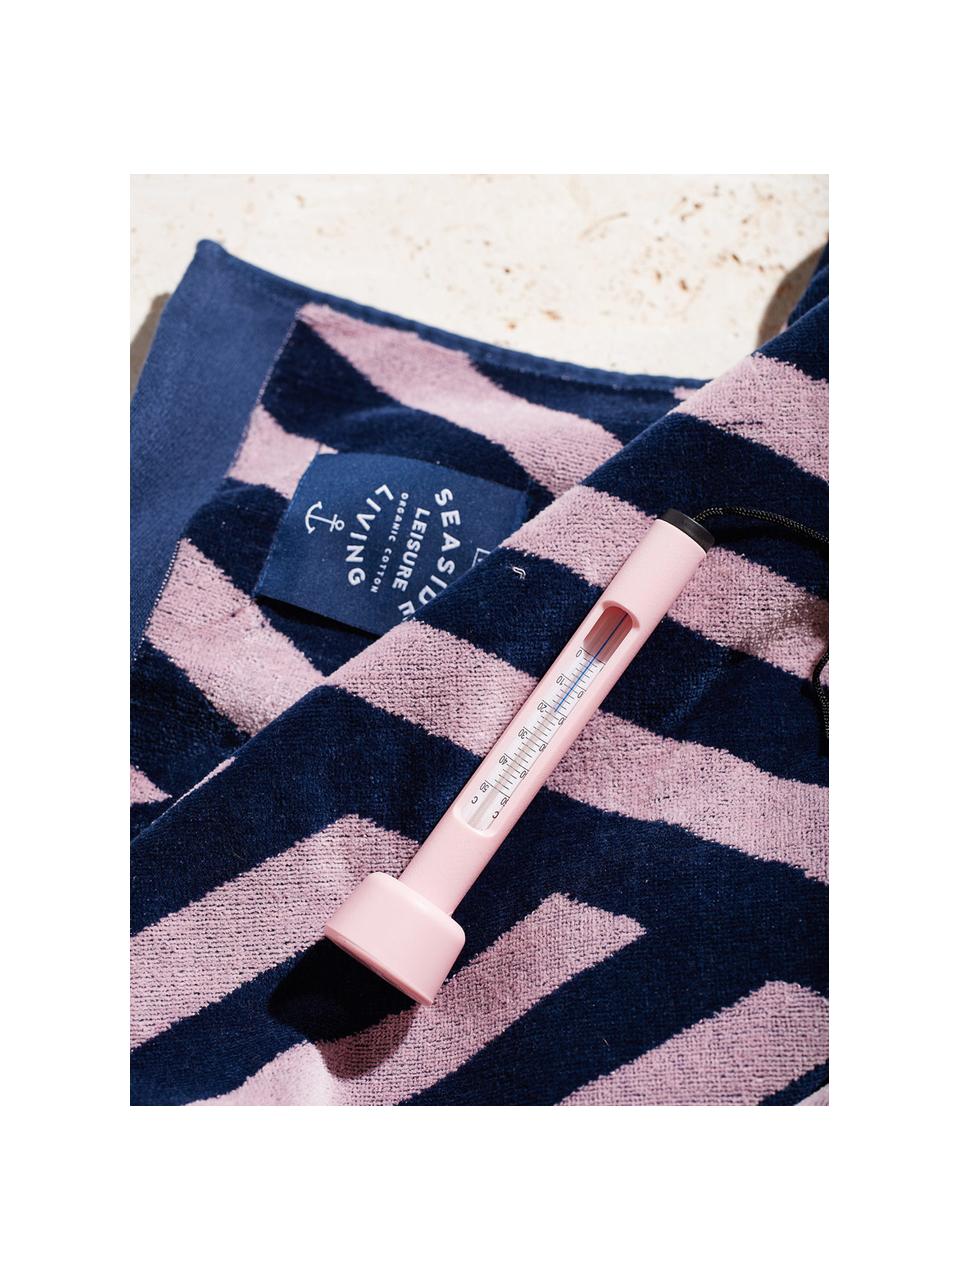 Toalla de playa Bonsall, 100% algodón ecológico, certificado GOTS
Gramaje medio 450 g/m², Azul oscuro, rosa, An 80 x L 180 cm